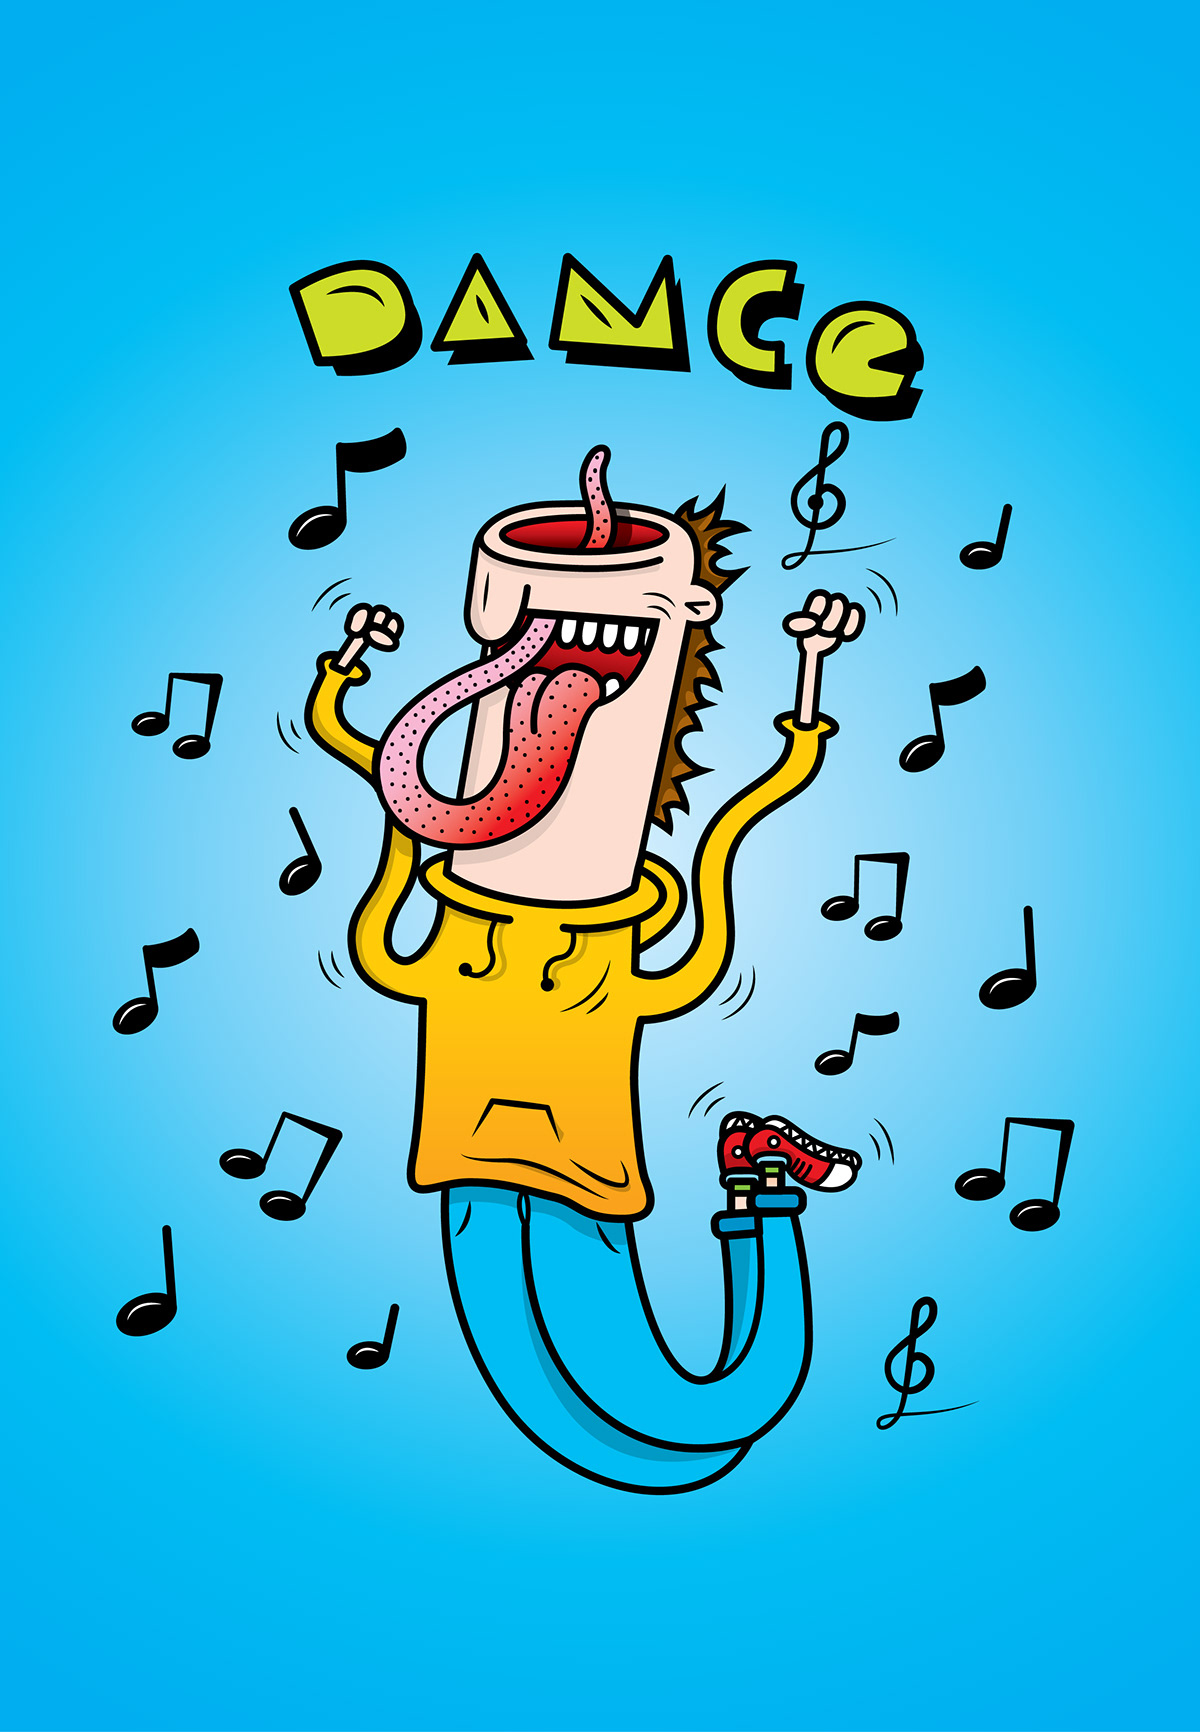 DANCE   brainless tongue plphox